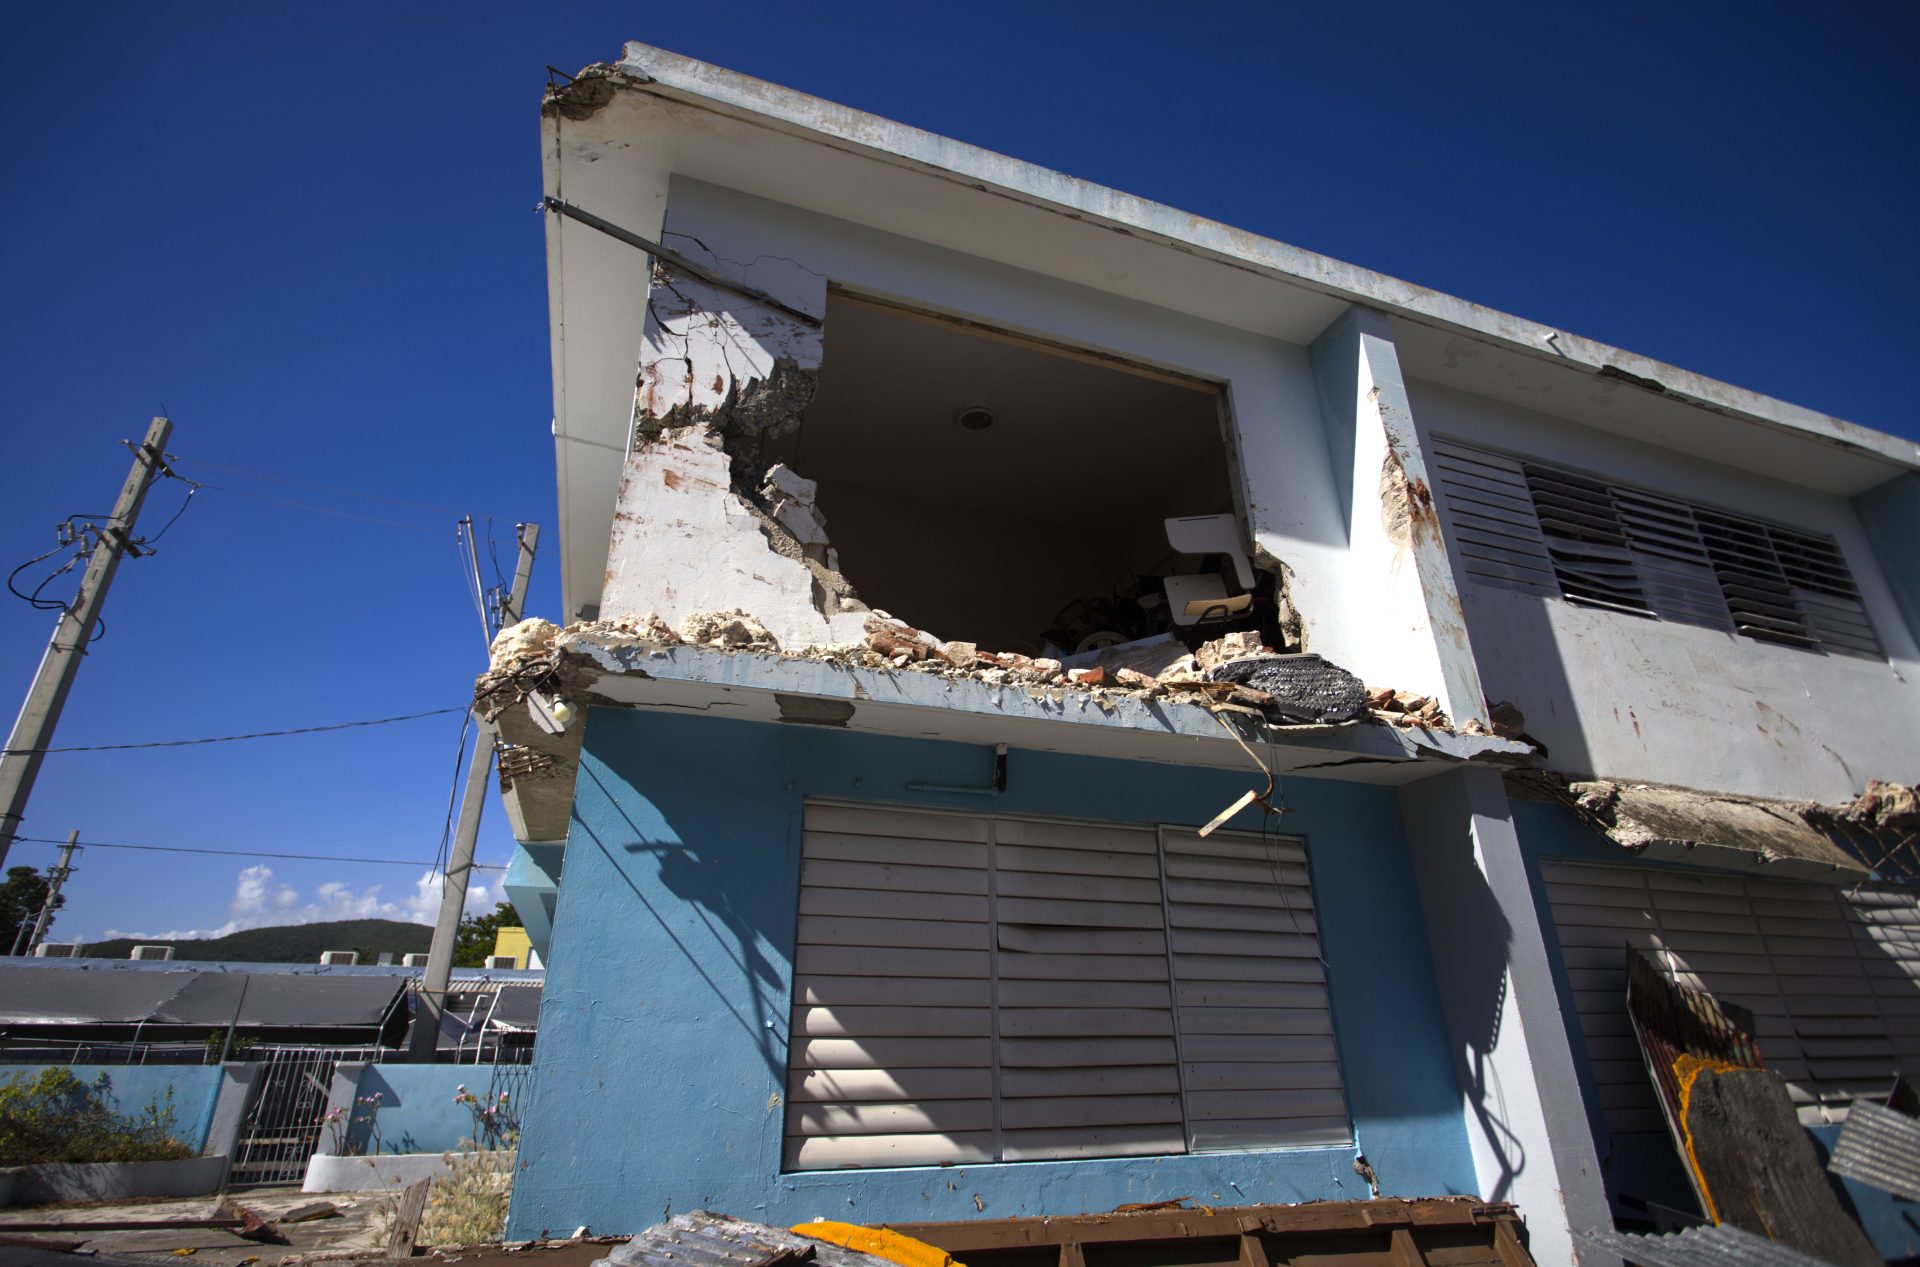 movimiento Tomar medicina Oxidado Puerto rico sufre las secuelas de los terremotos de hace tres años